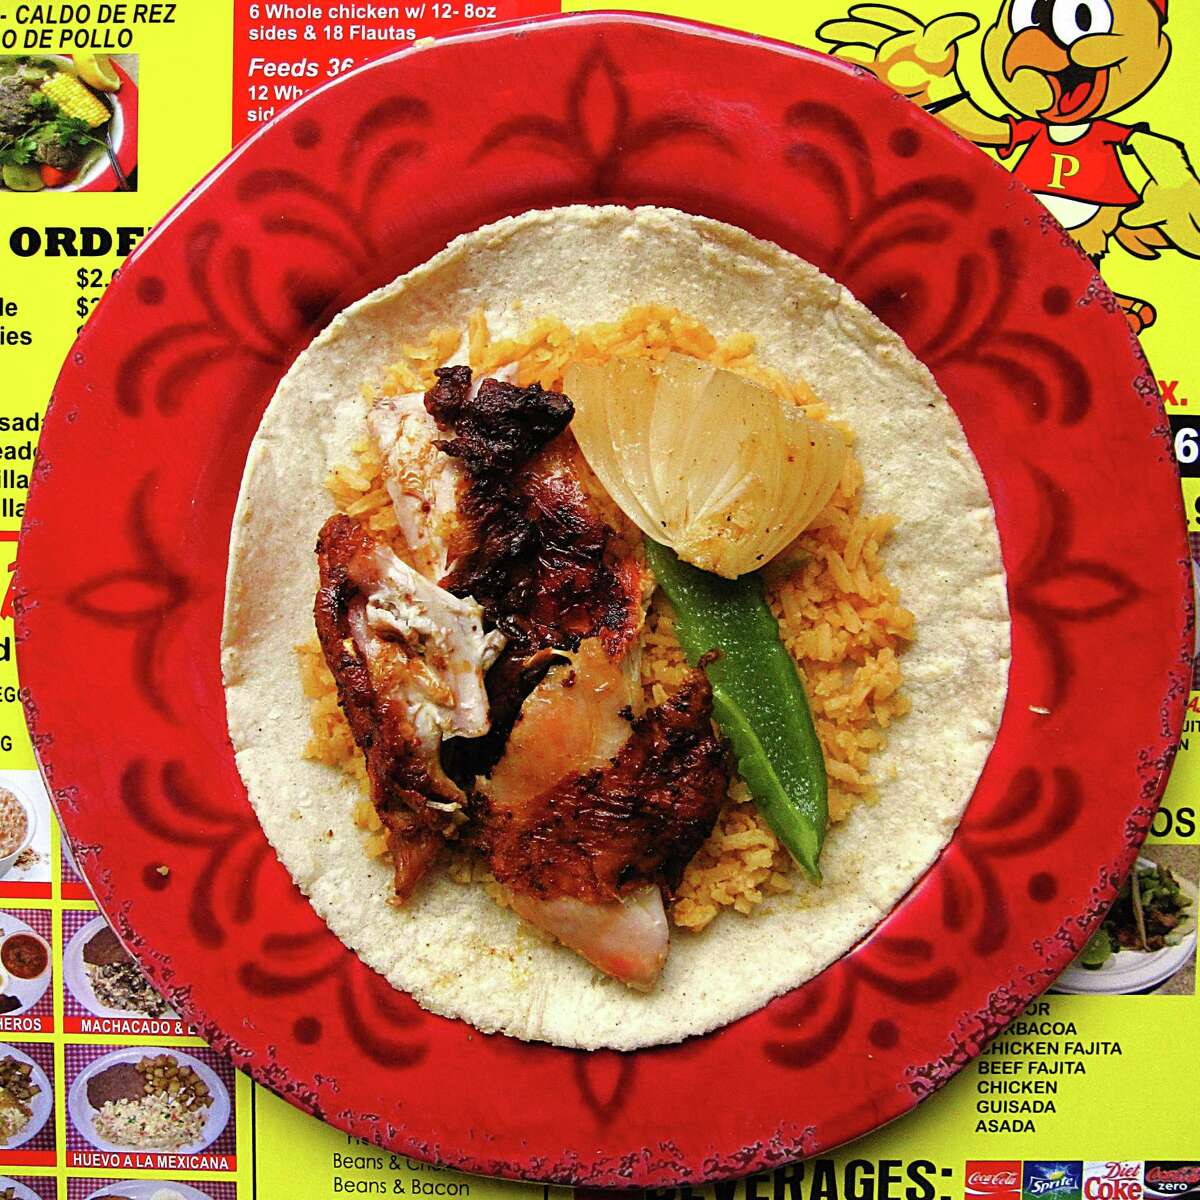 365 Days of Tacos: Super Pollos Asados Los Primos